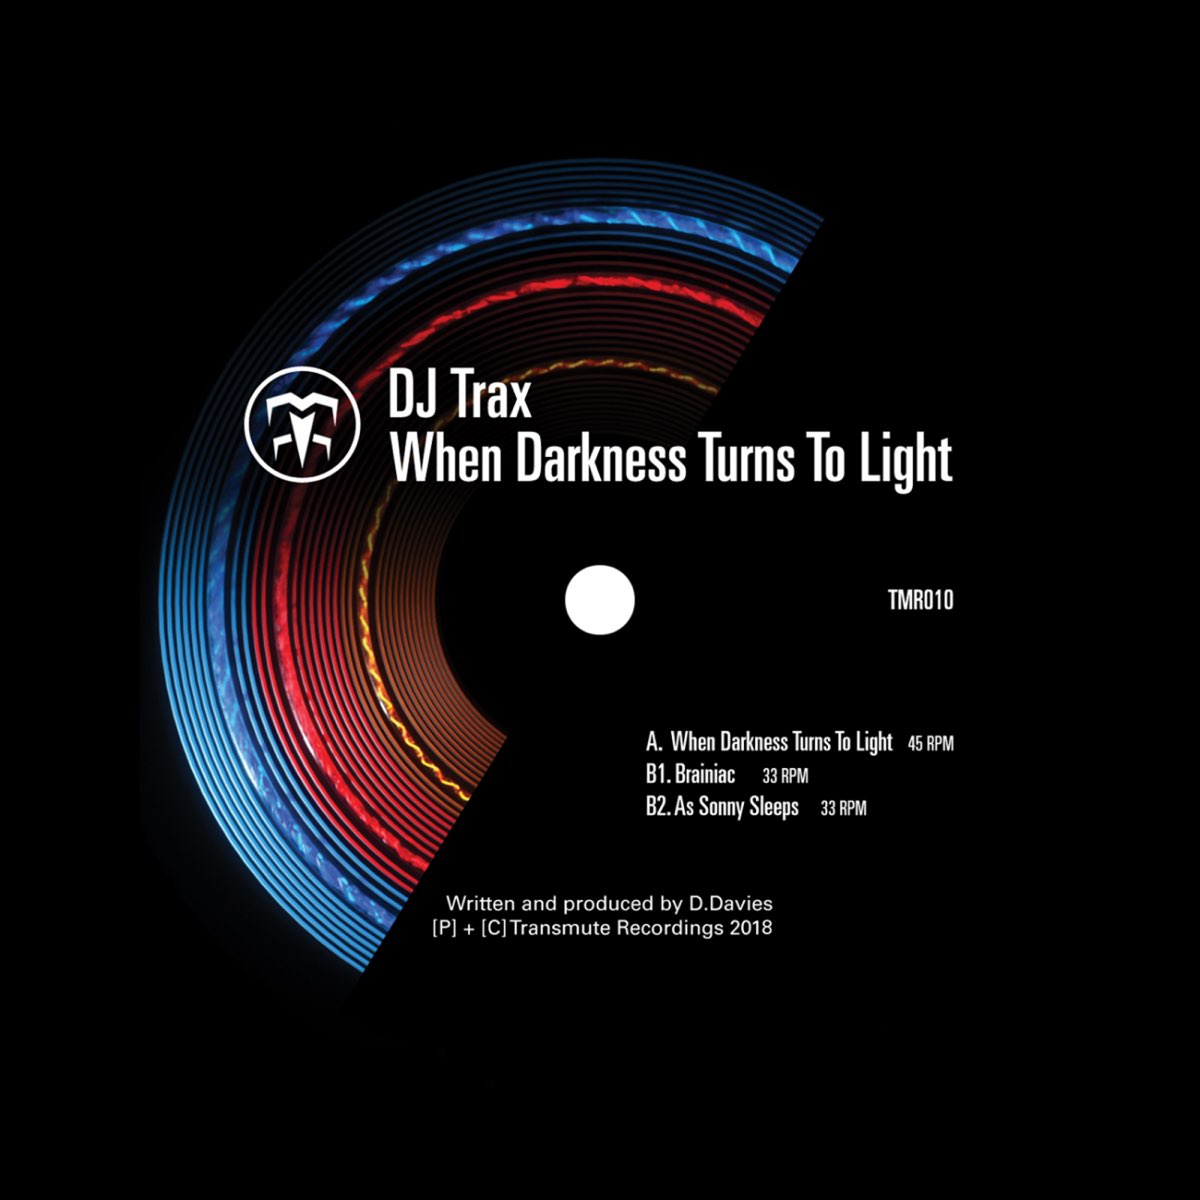 It is turning dark. DJ Trax. Darkness turn to Light. Turn of the Dark. DJ Trax - the Outsider years.